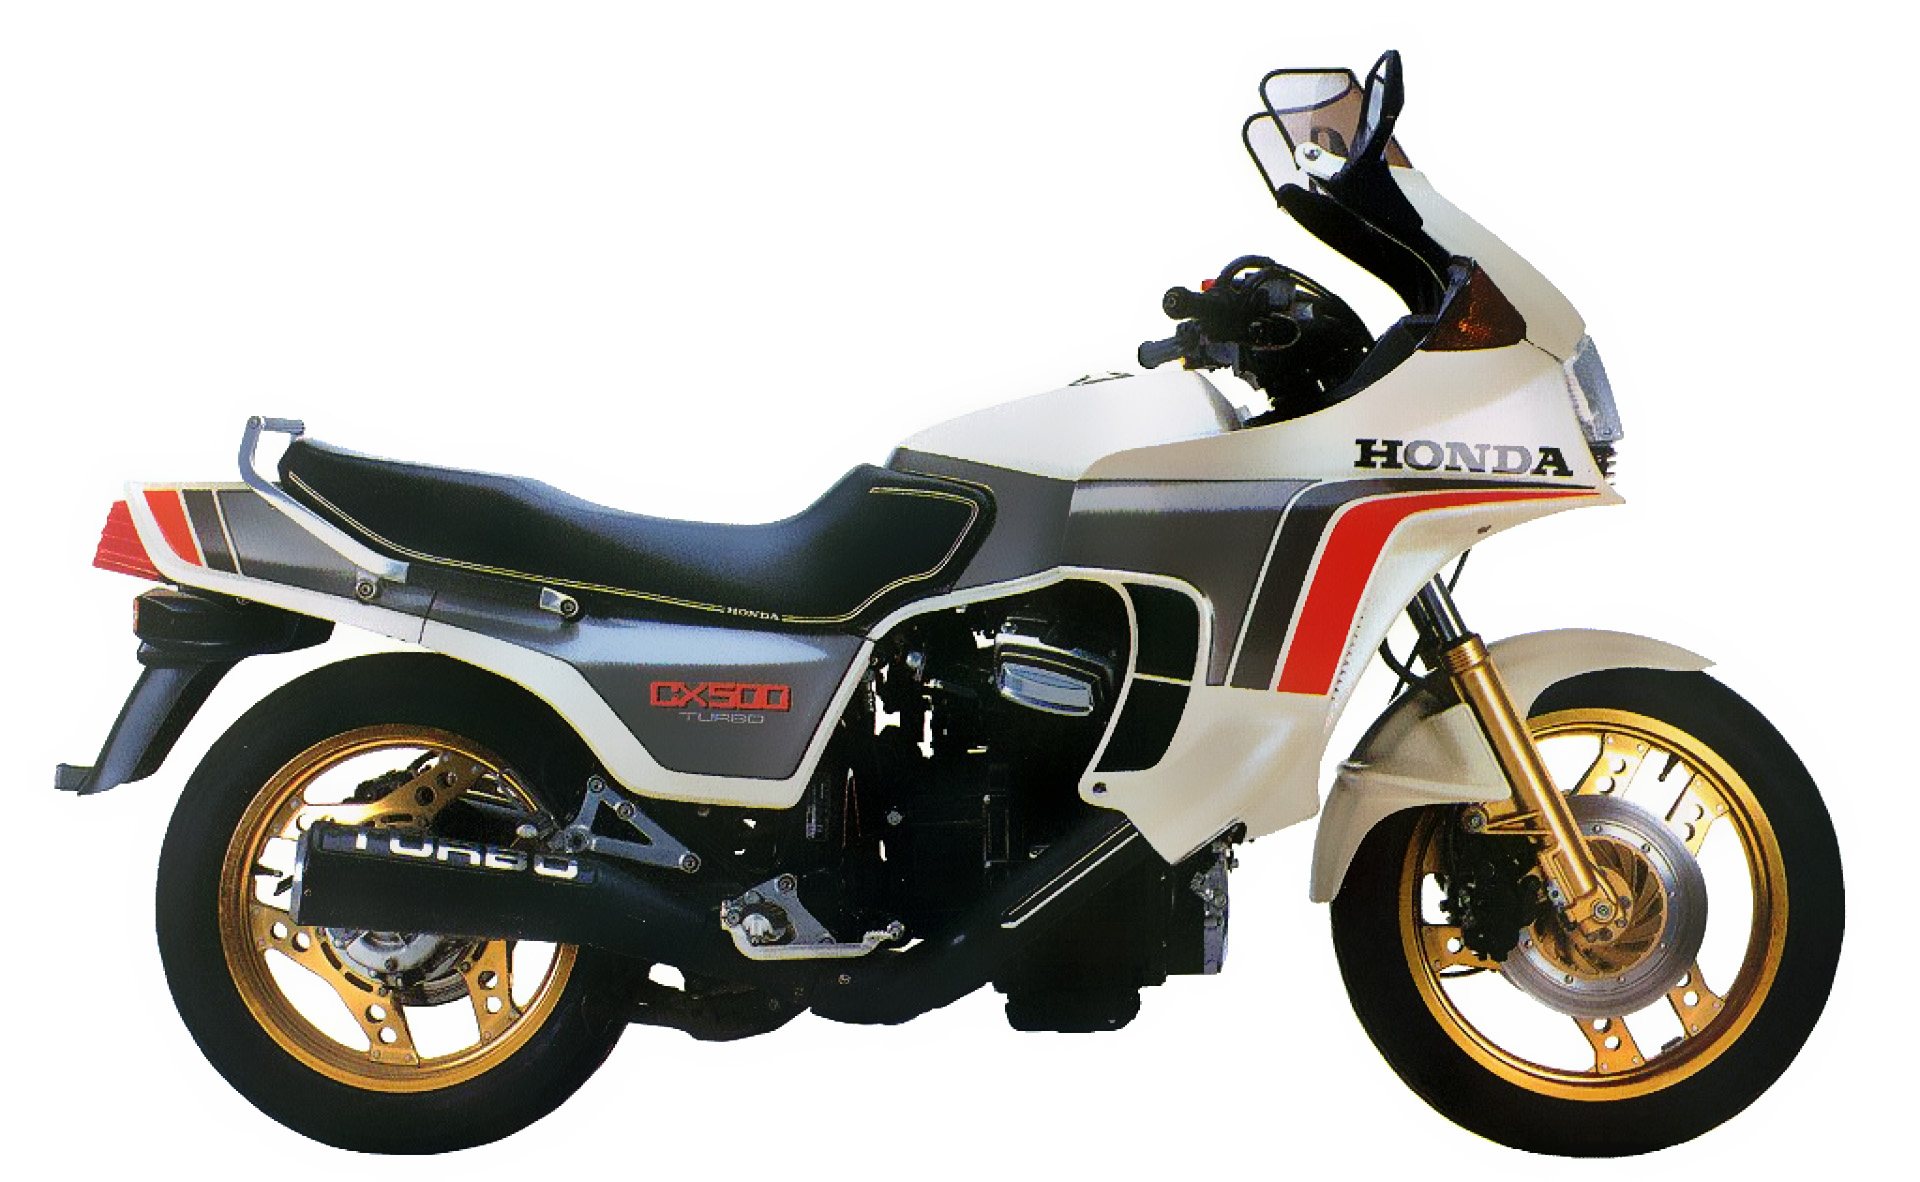 Moto del día: Honda CX500 Turbo